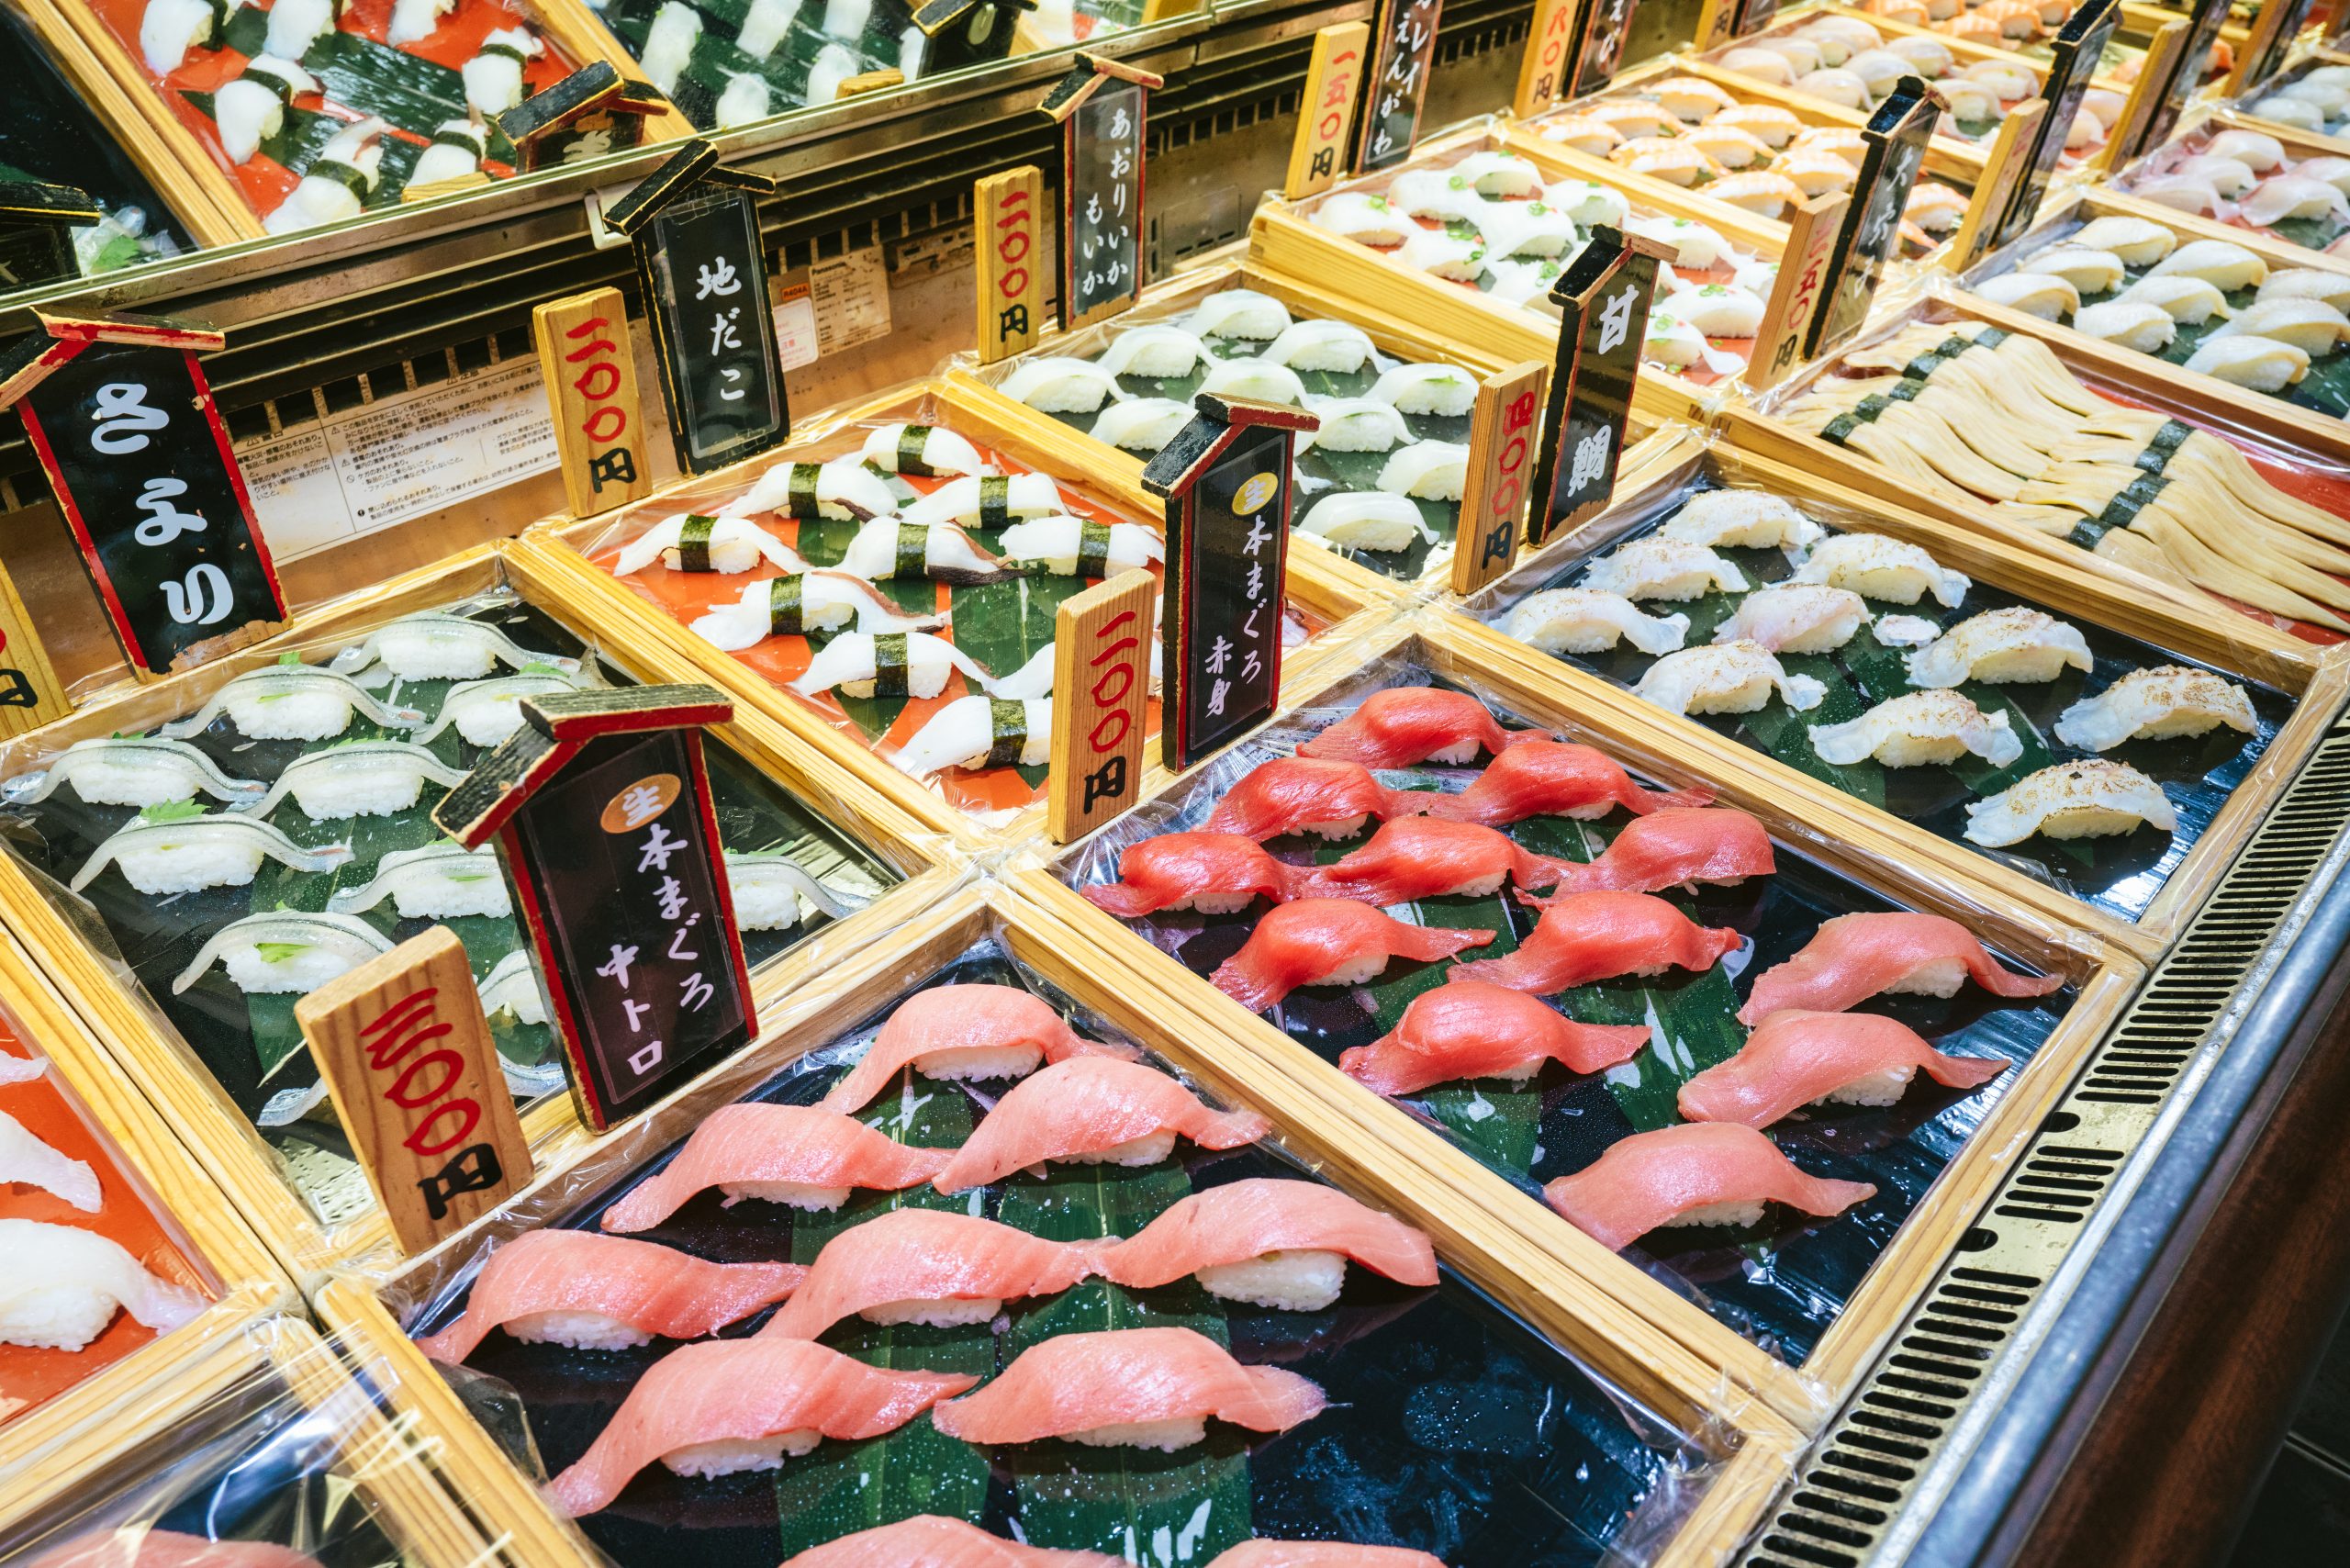 Saiki Umi no Ichiba - Seafood market